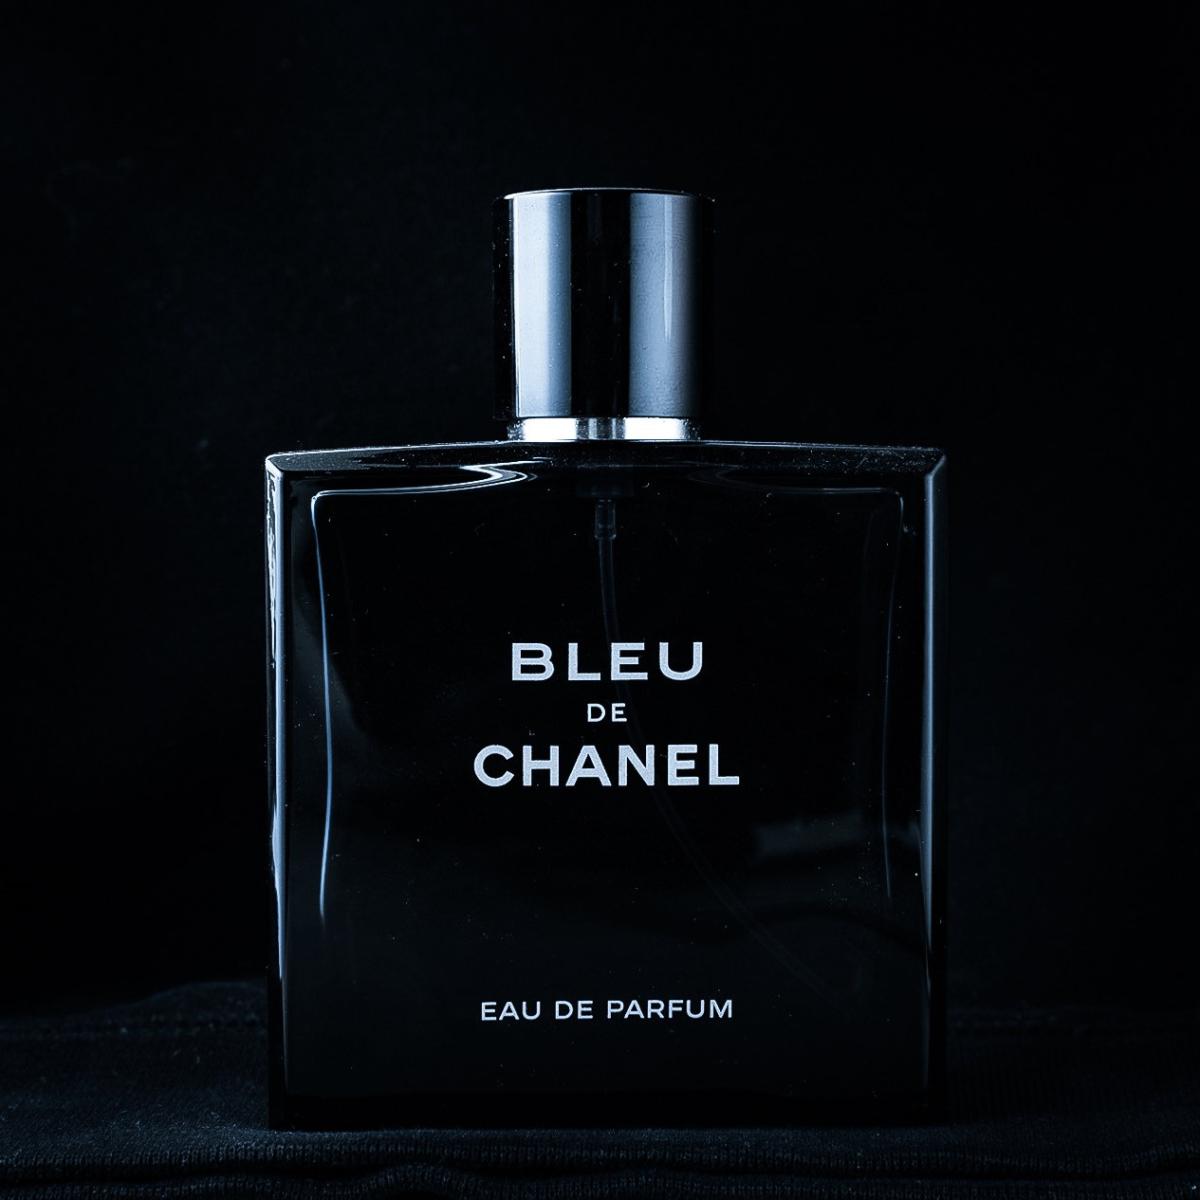 Bleu de chanel москва. Chanel bleu EDP 100ml. Chanel bleu de Chanel EDP, Шанель Блю. Bleu de Chanel pour homme 100 мл. Bleu de Chanel мужские.